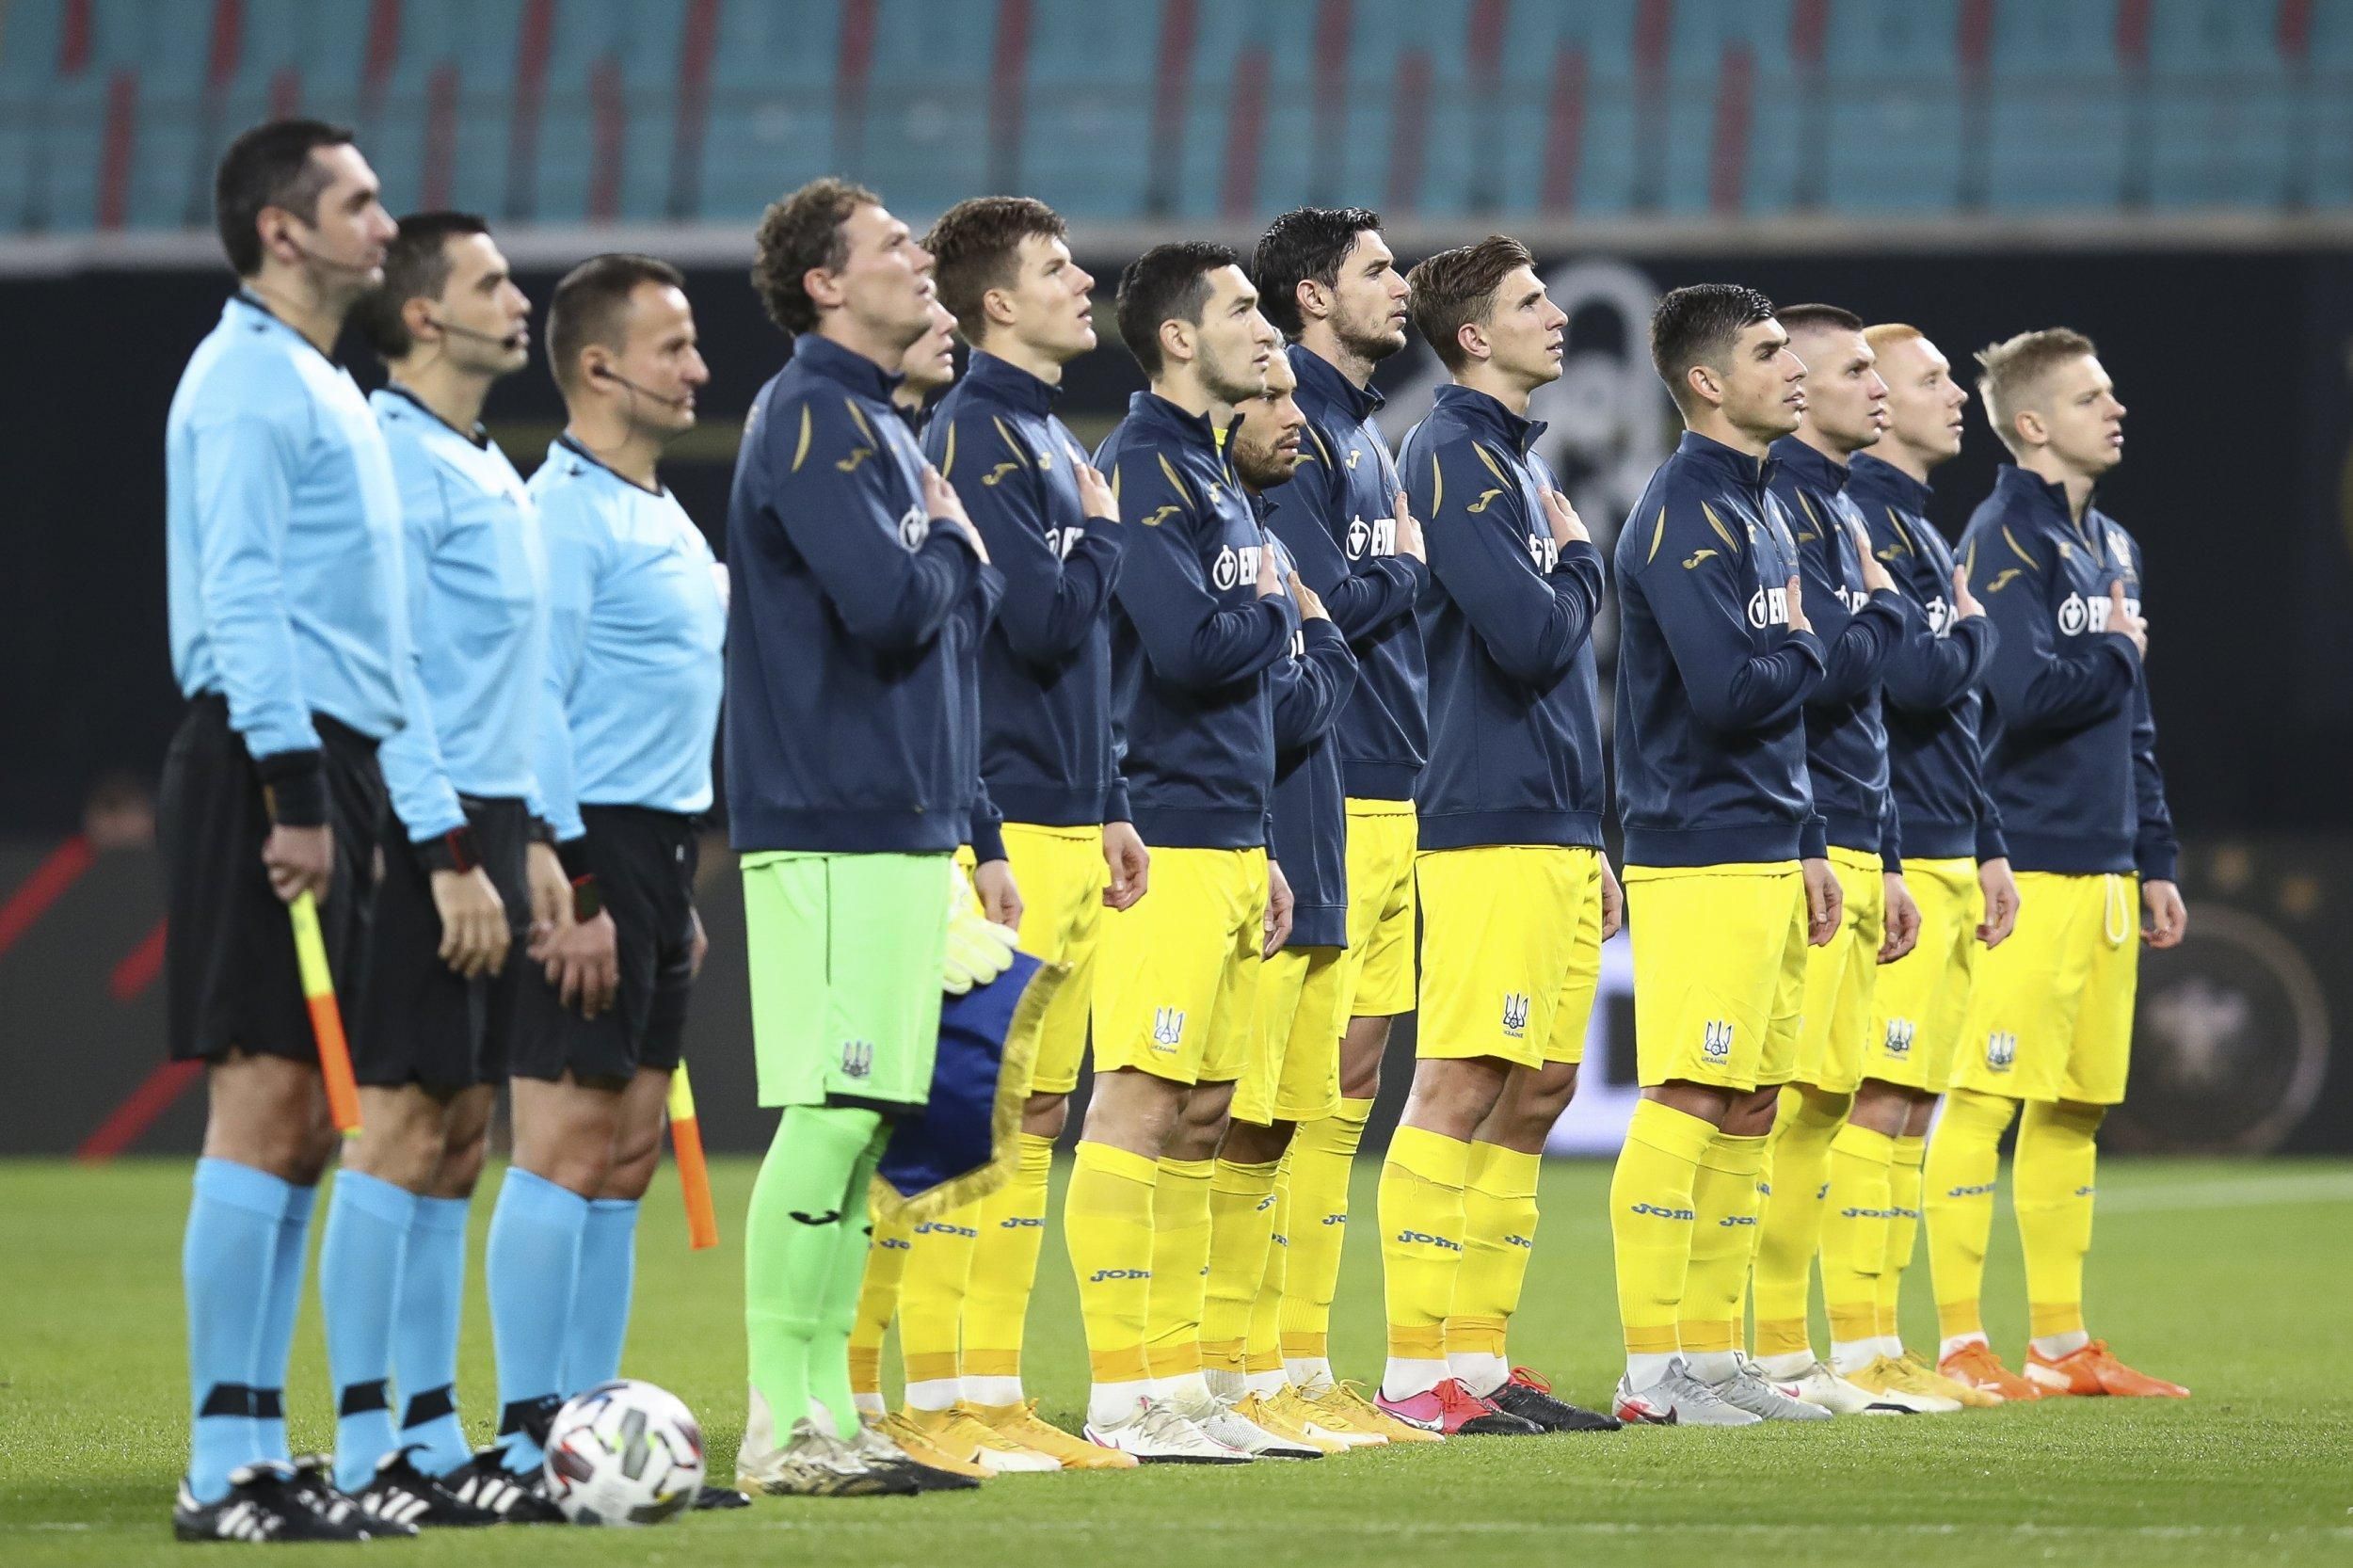 Украина упала в рейтинге ФИФА – наша команда выбыла из 25 сильнейших команд мира - Сборная